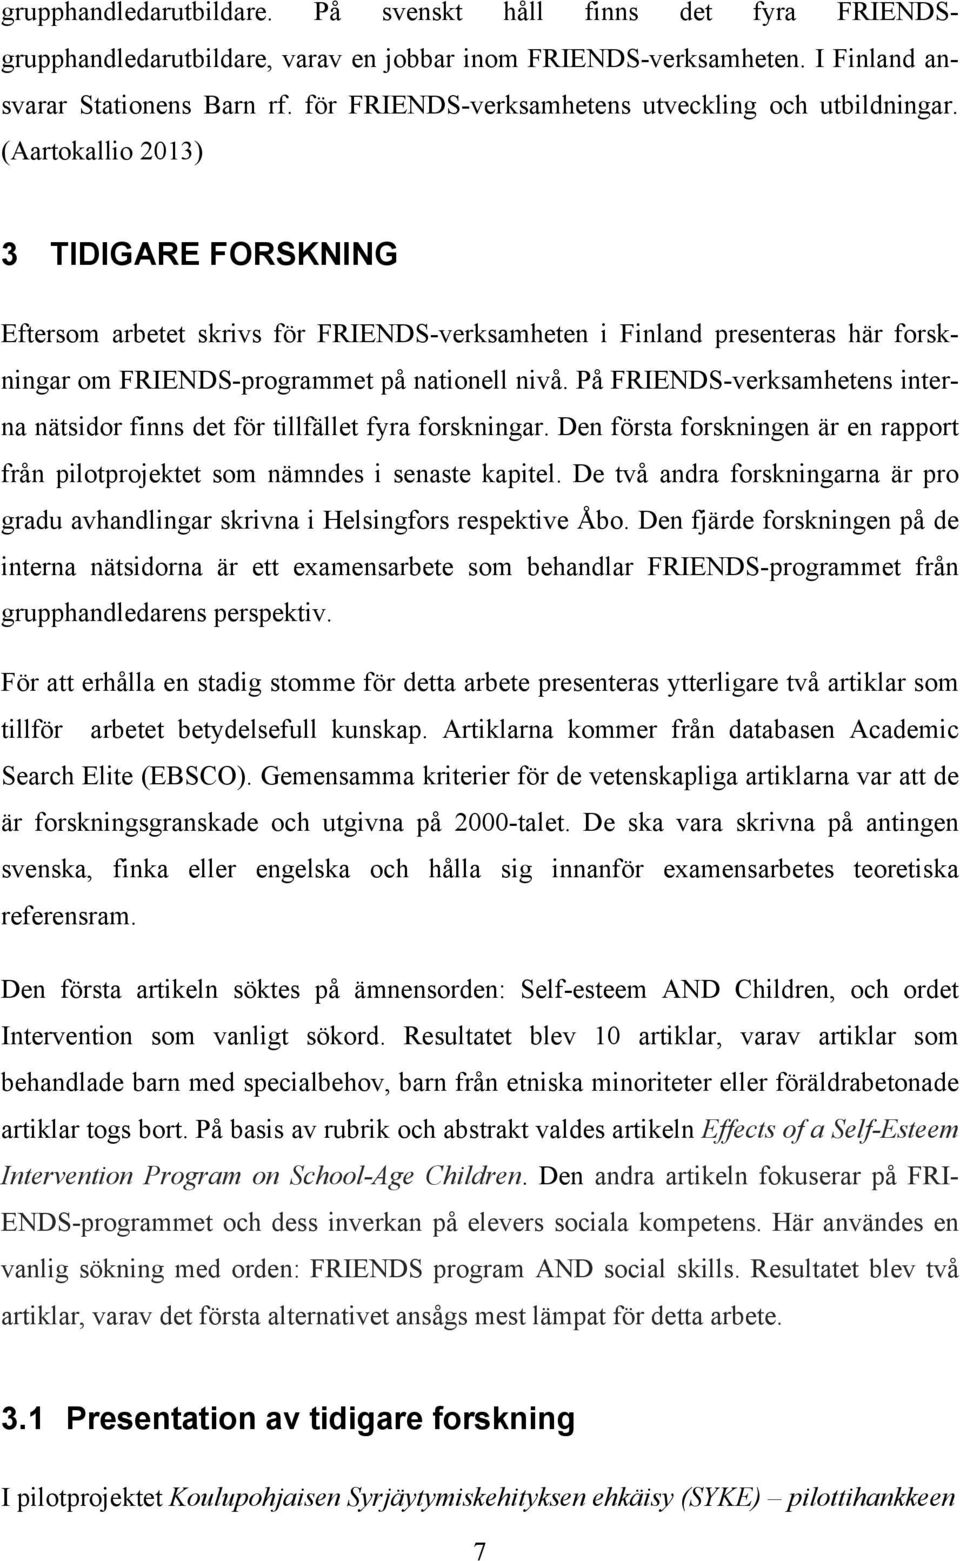 (Aartokallio 2013) 3 TIDIGARE FORSKNING Eftersom arbetet skrivs för FRIENDS-verksamheten i Finland presenteras här forskningar om FRIENDS-programmet på nationell nivå.